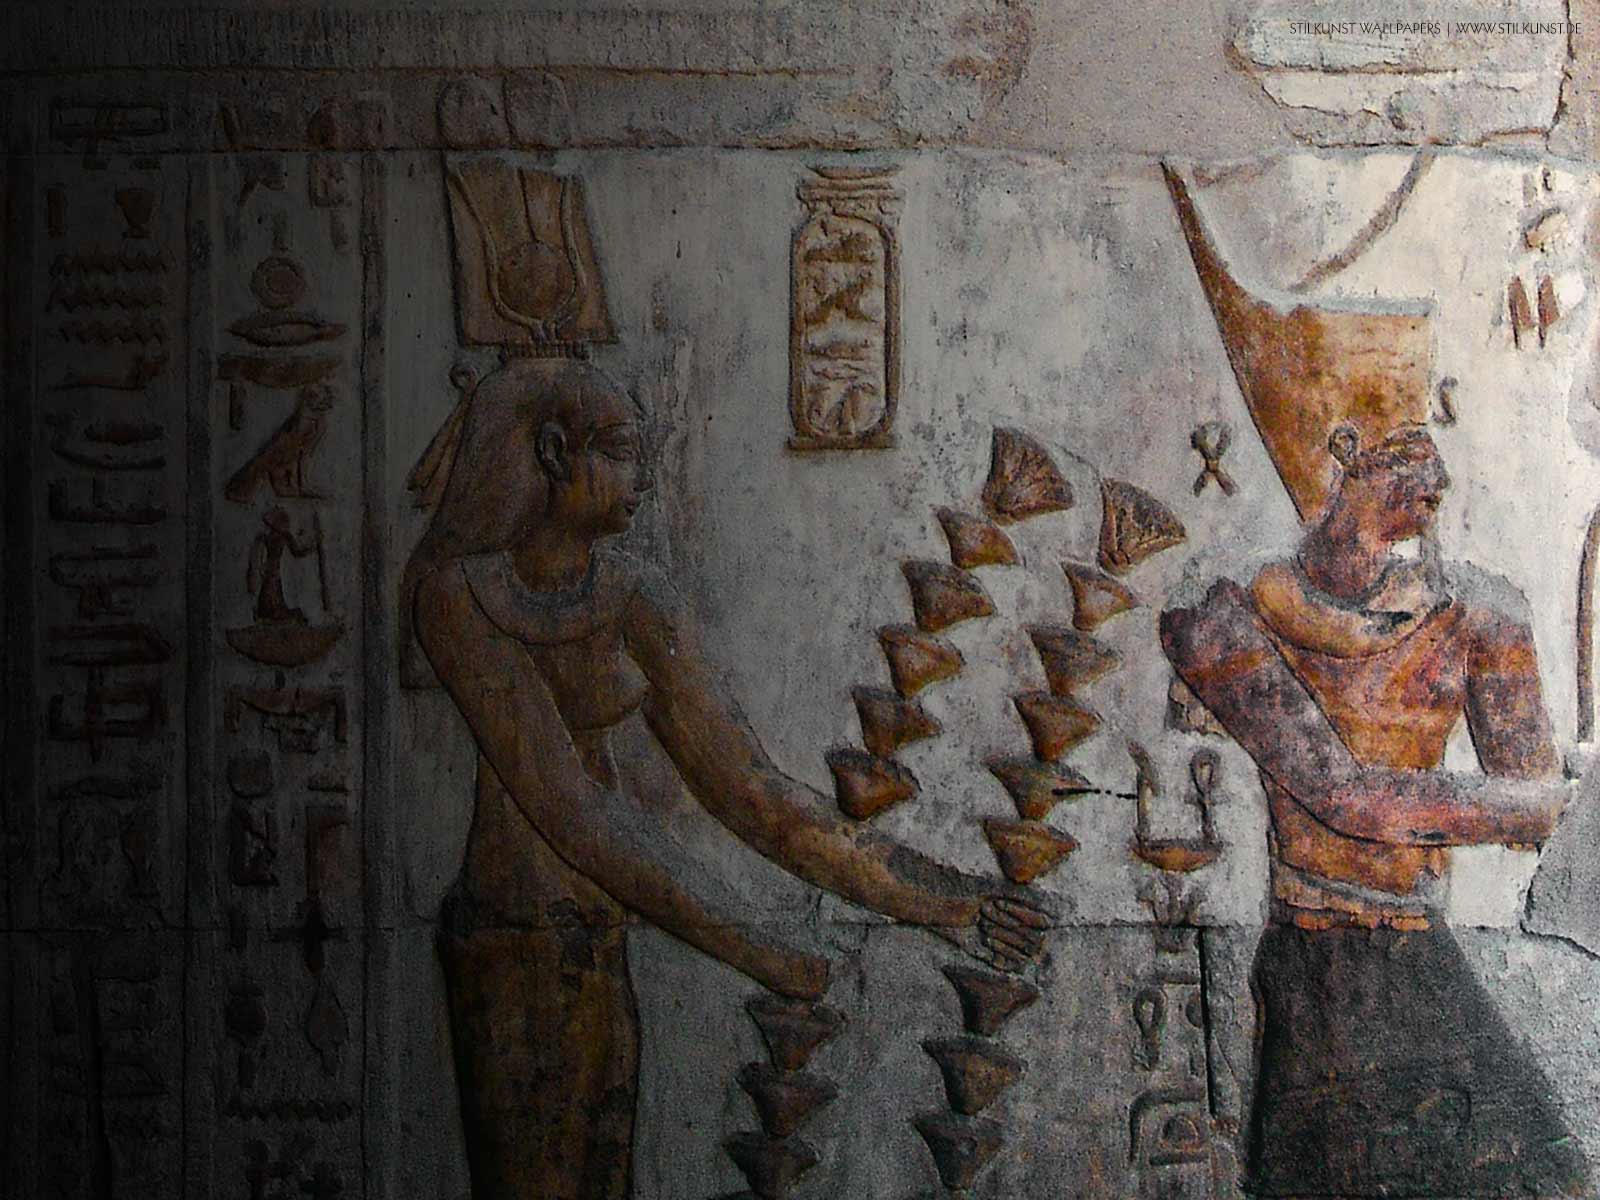 Ptolemaios VI. und Kleopatra II. | 1600 x 1200px | Bild: ©by Sabrina | Reiner | www.stilkunst.de | Lizenz: CC BY-SA